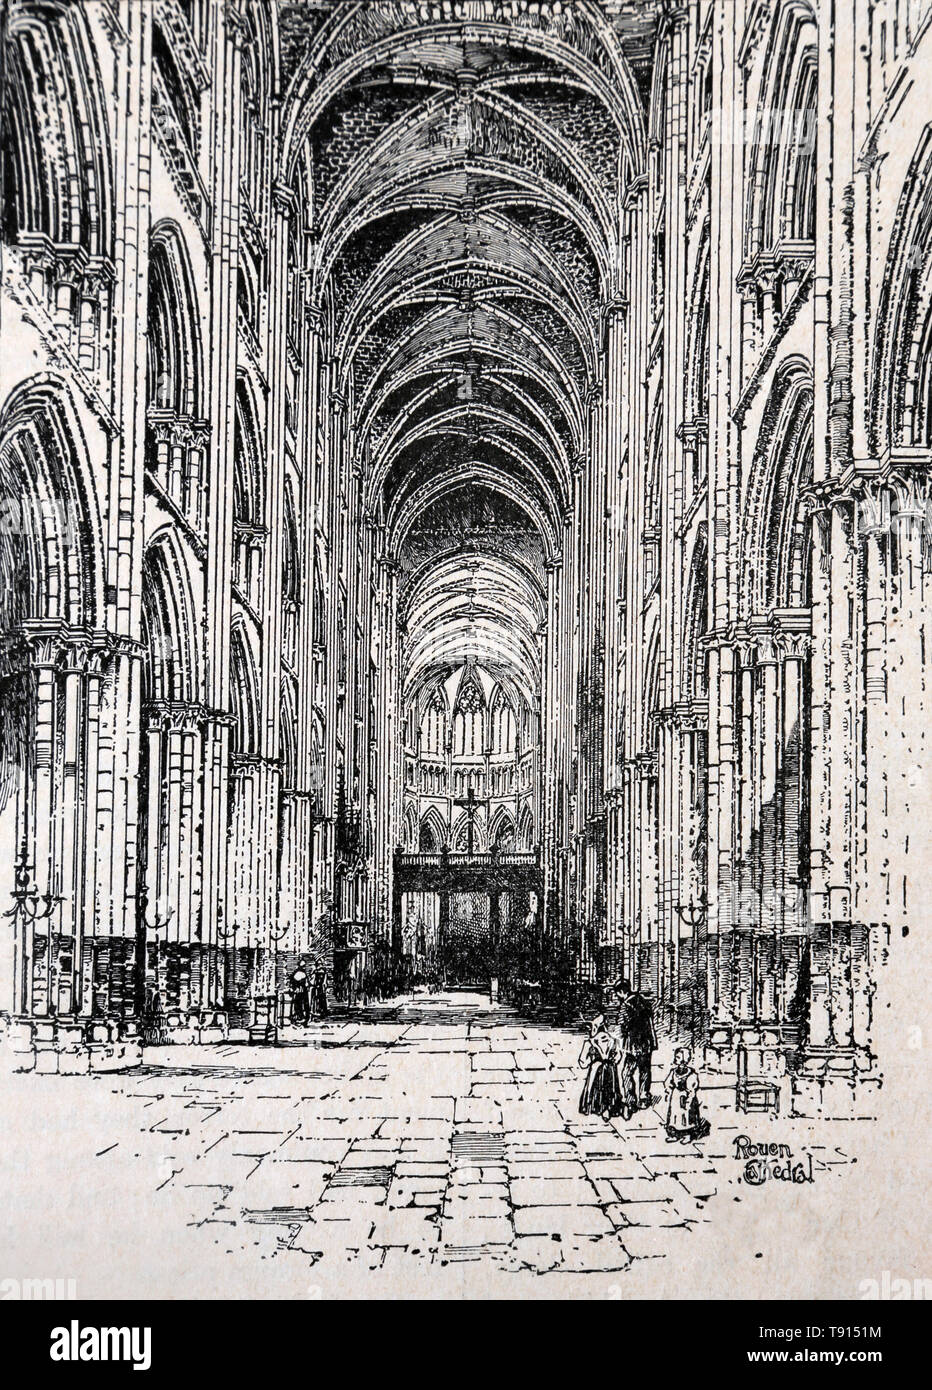 Abbildung der Innenraum die Kathedrale von Rouen 1211 A.D aus der Geschichte des Buches Cassell von England Stockfoto